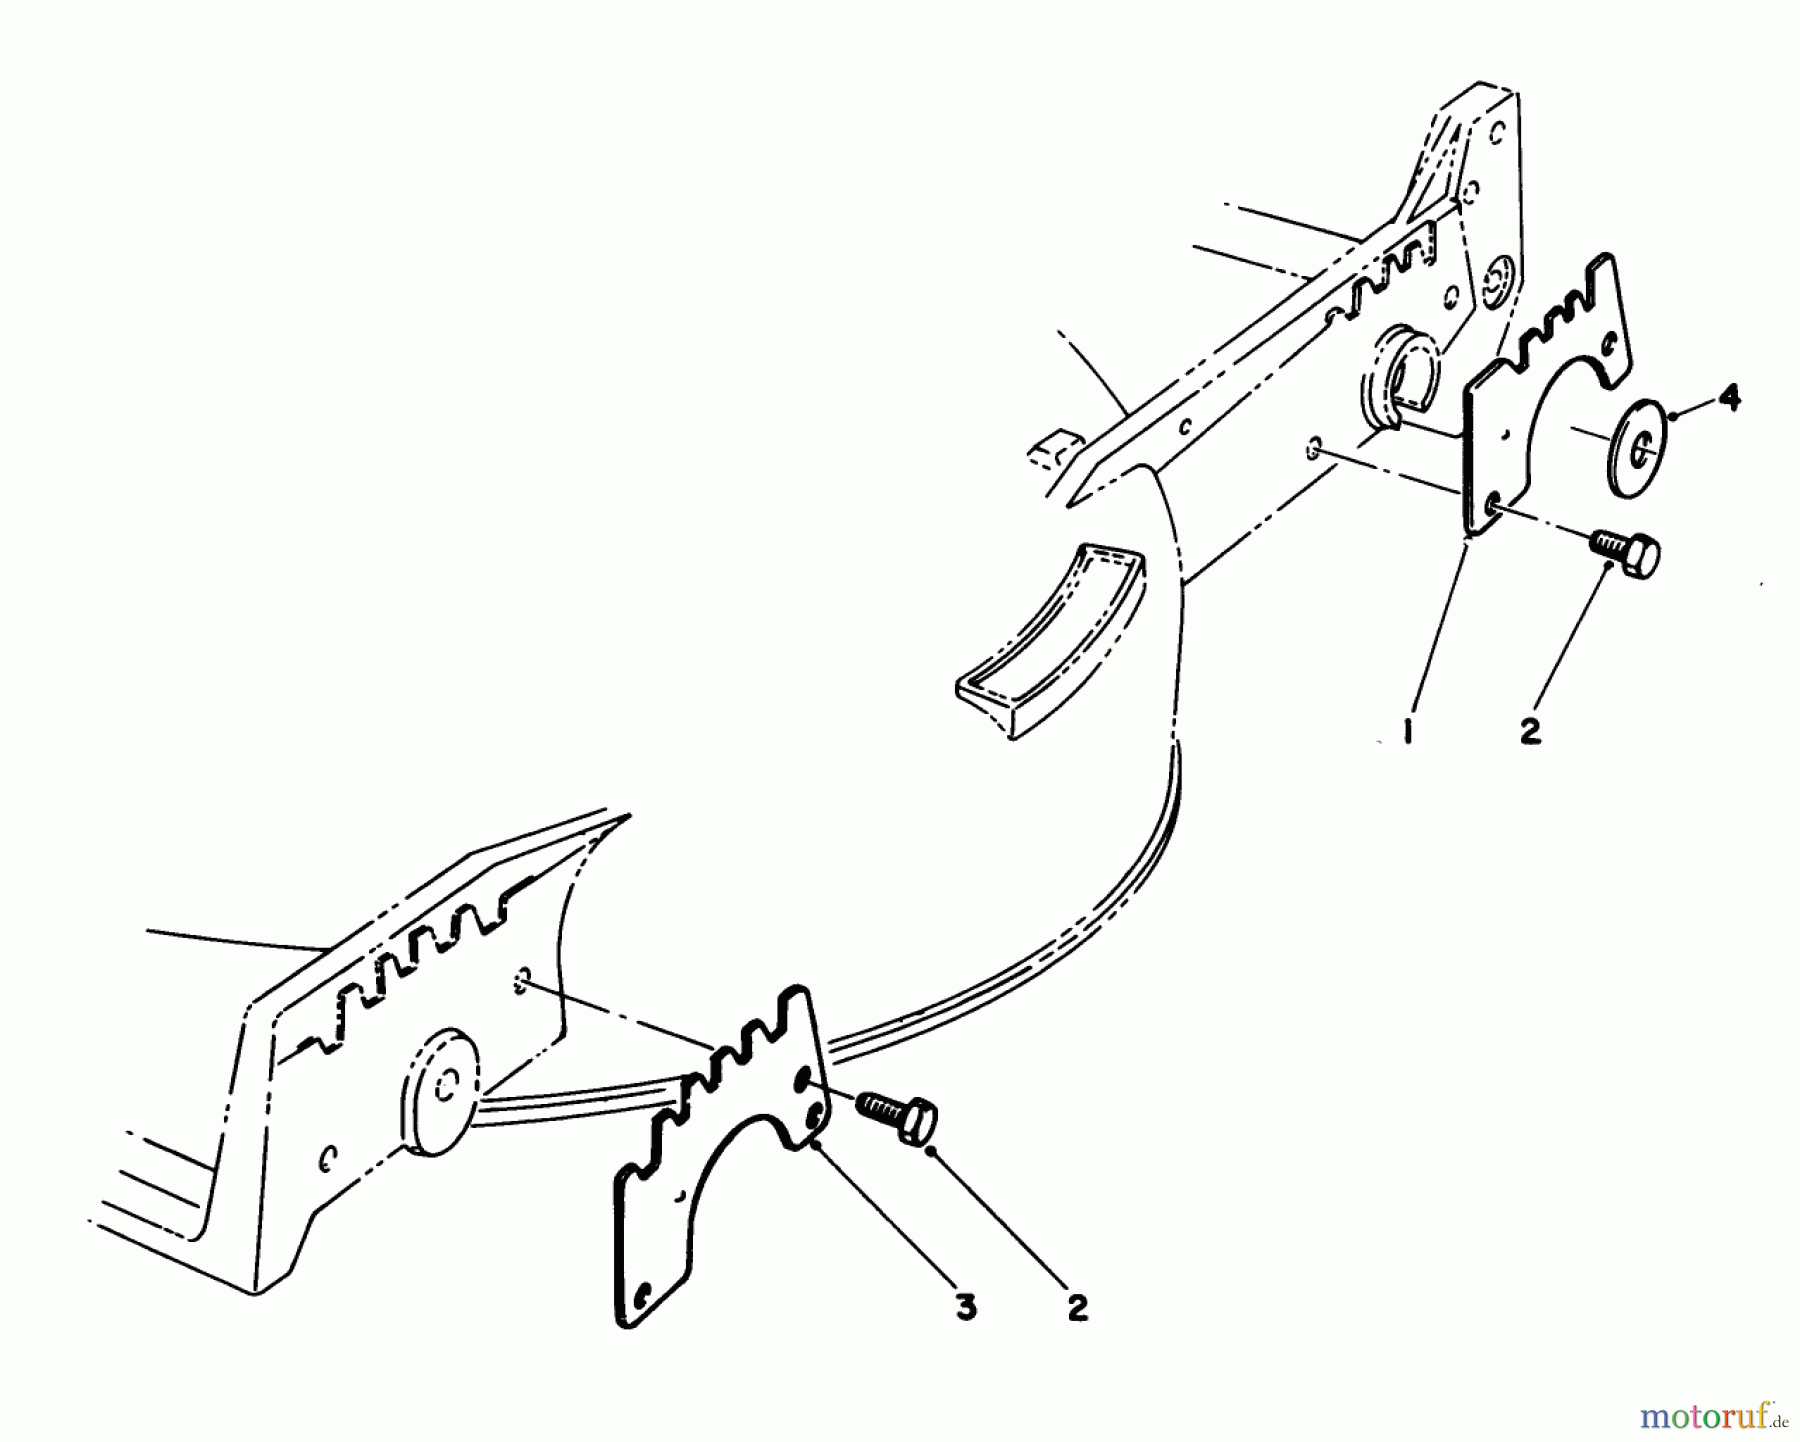  Toro Neu Mowers, Walk-Behind Seite 1 20532 - Toro Lawnmower, 1989 (9000001-9999999) WEAR PLATE KIT MODEL NO. 49-4080 (OPTIONAL)